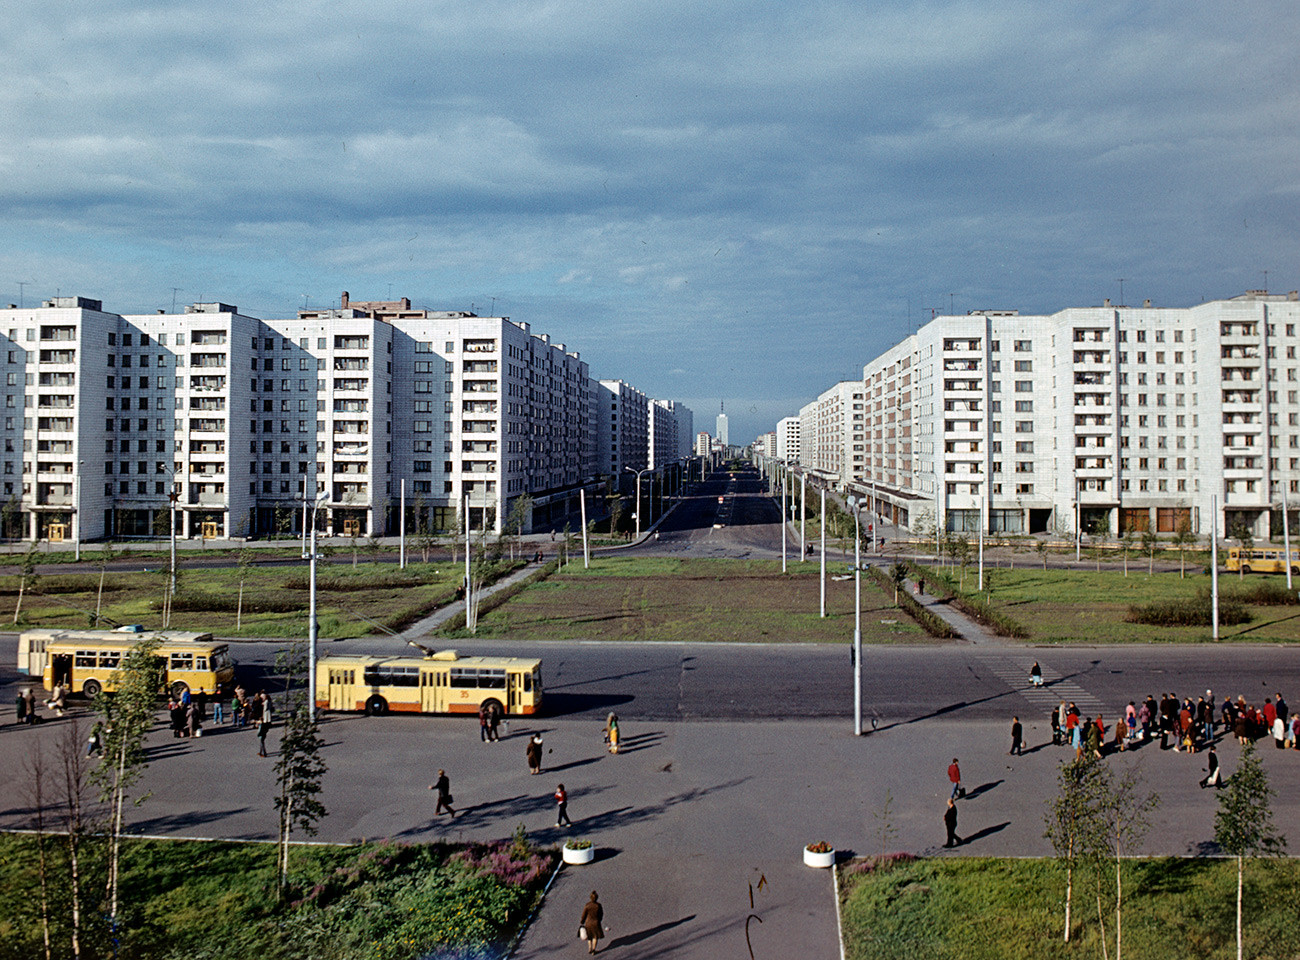 Engels Str., Arkhangelks, Russia